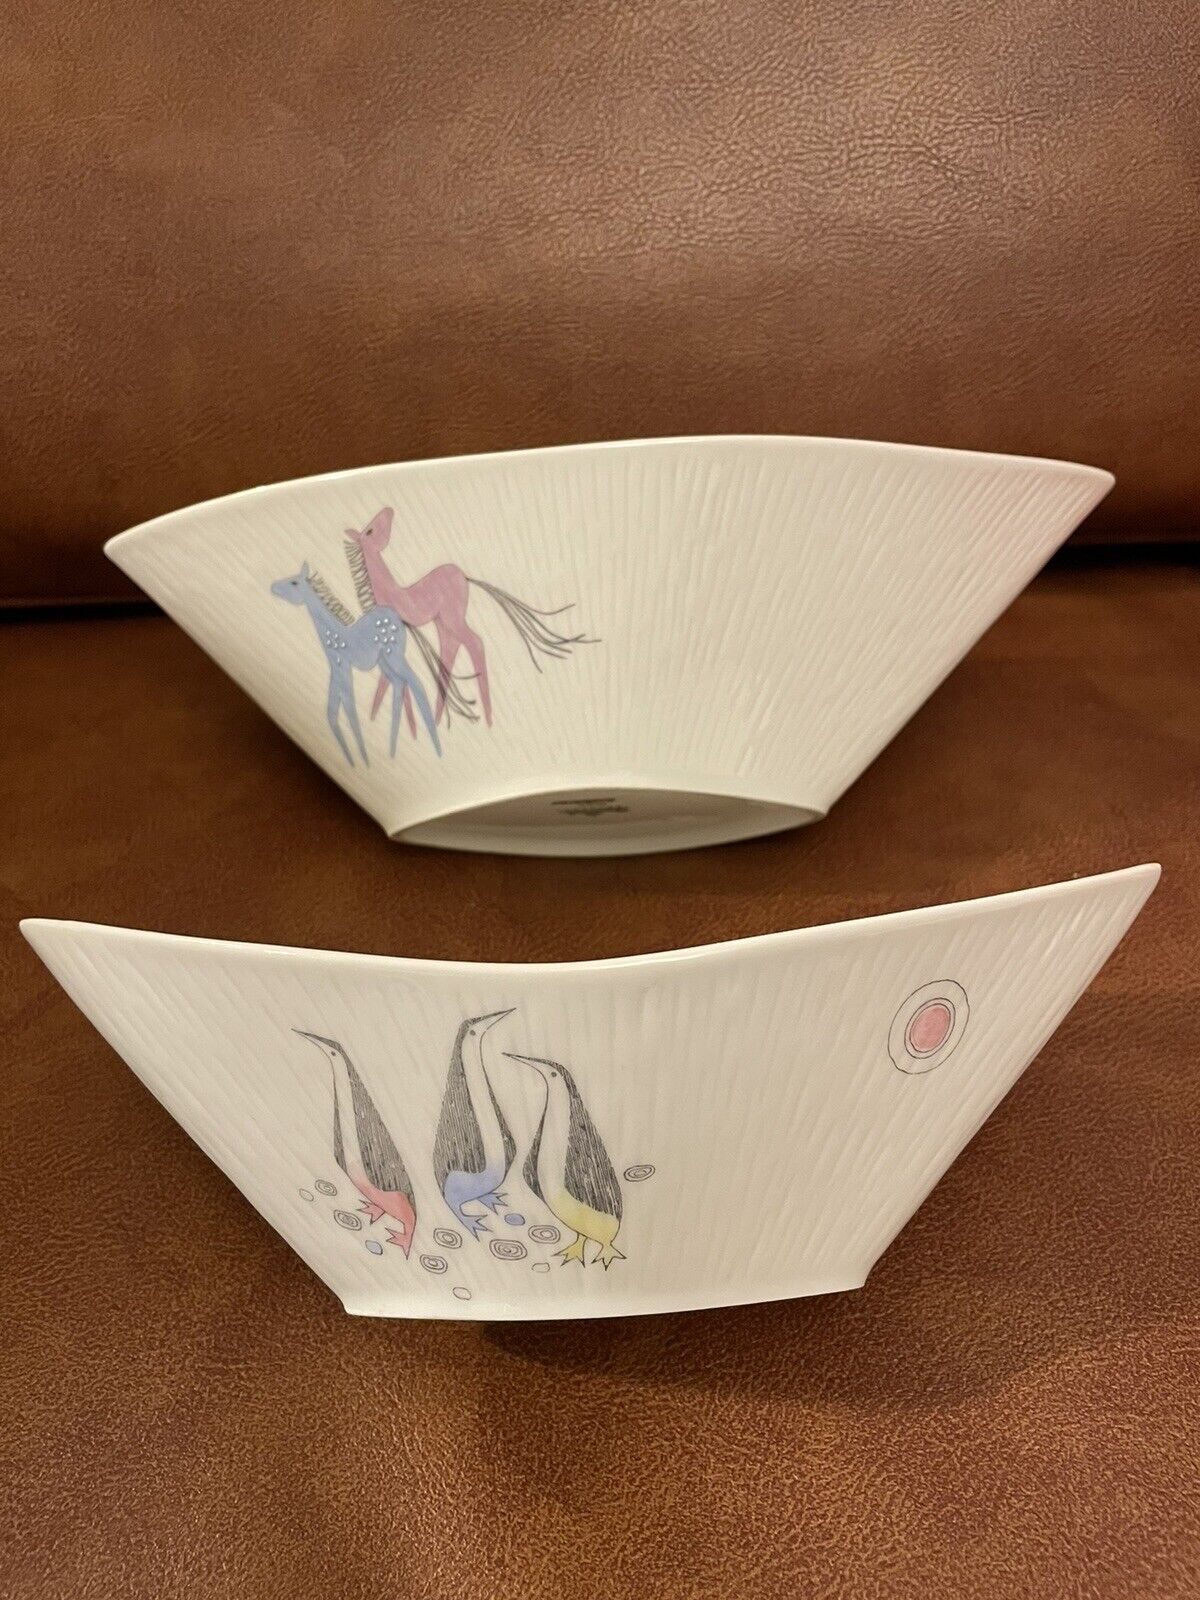 2 Rosenthal Ernst Fuchs INKA PENGUINS HORSE Porcelain Dishes Boats Stackable